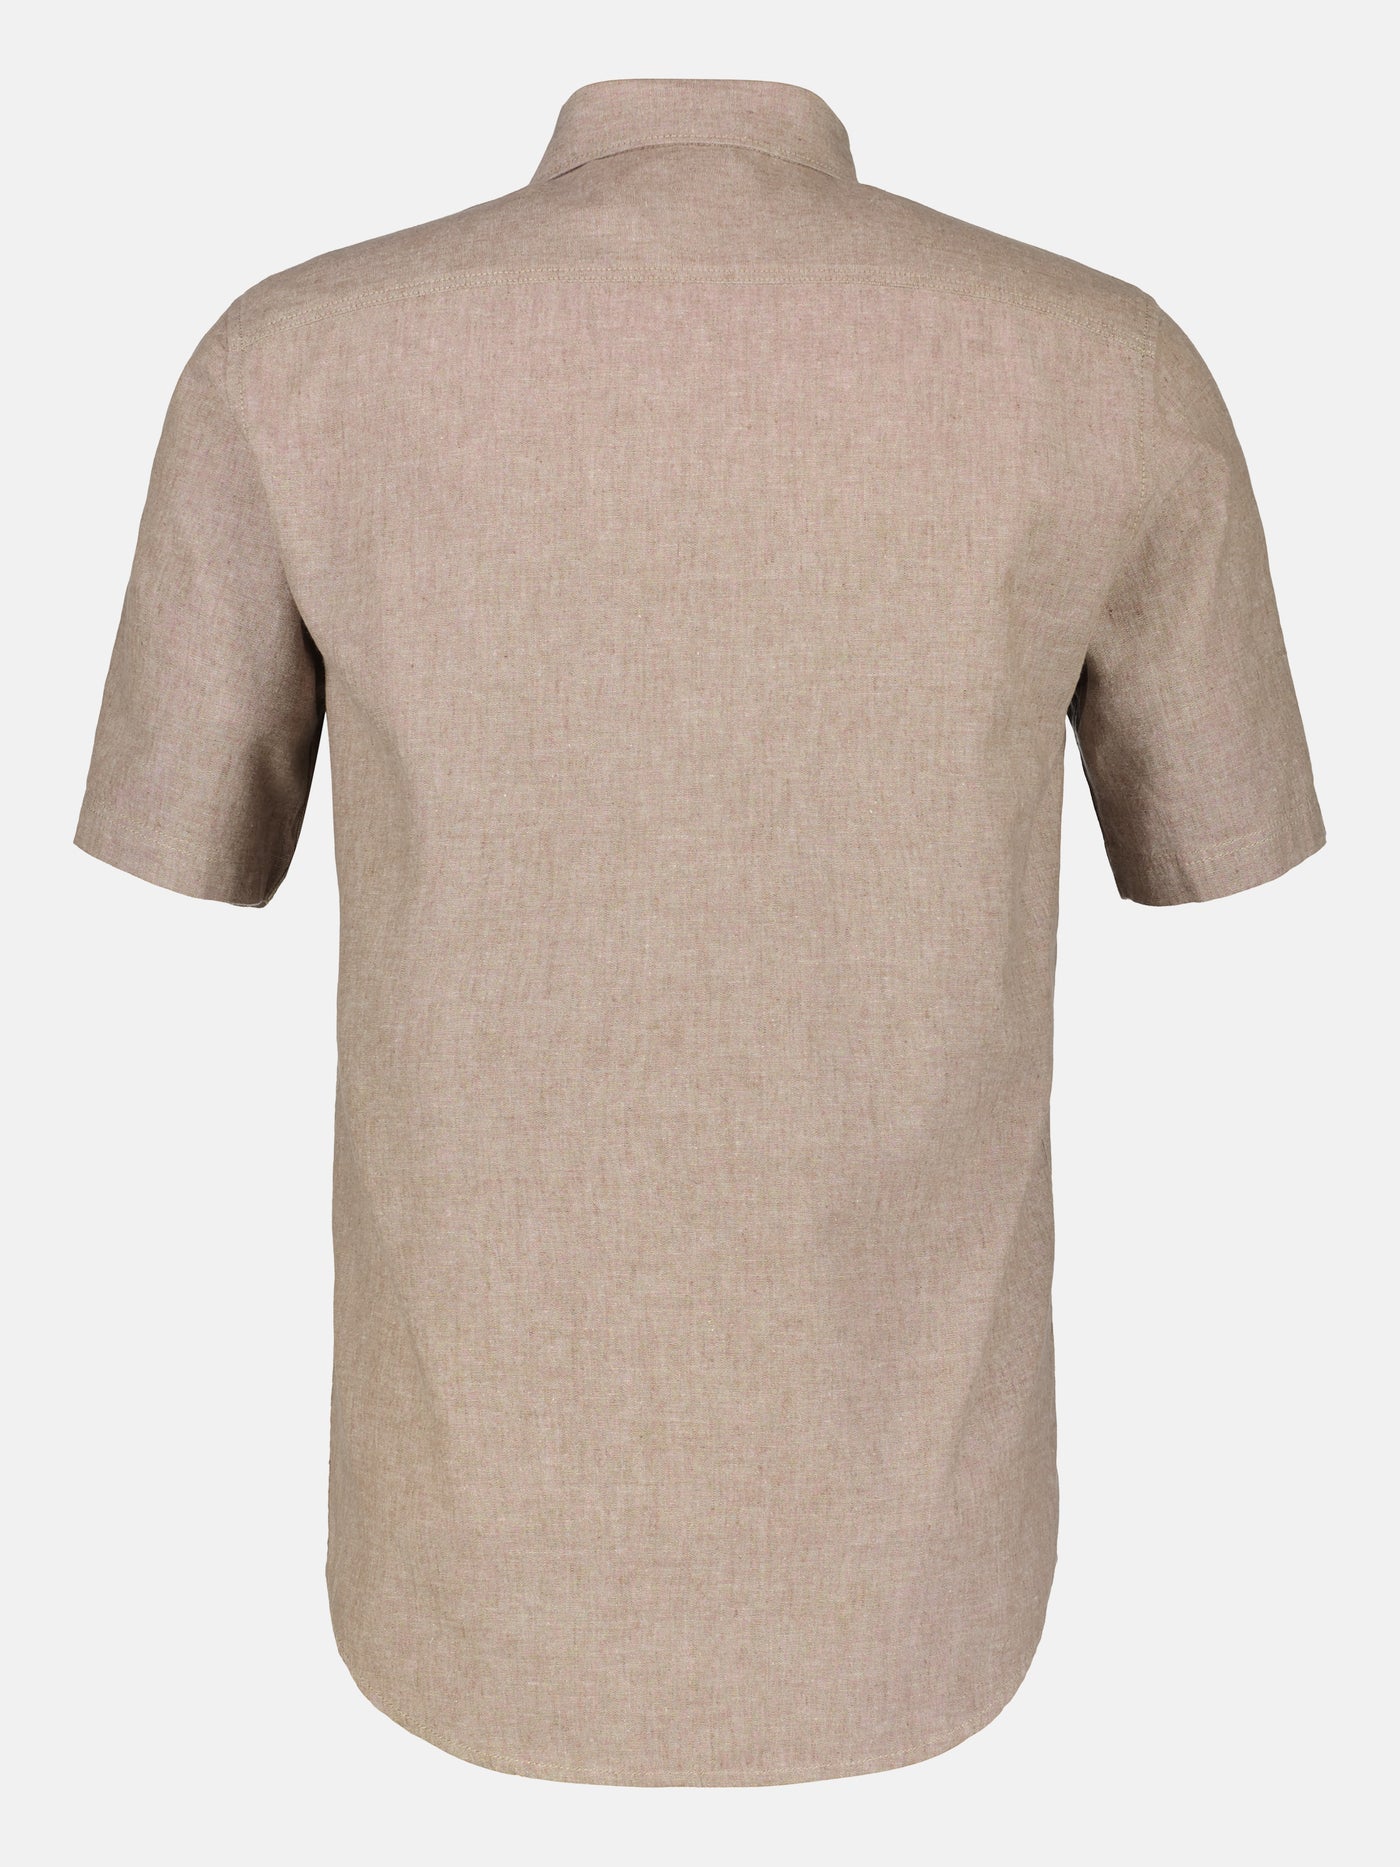 Short-sleeved shirt, cotton-linen mix